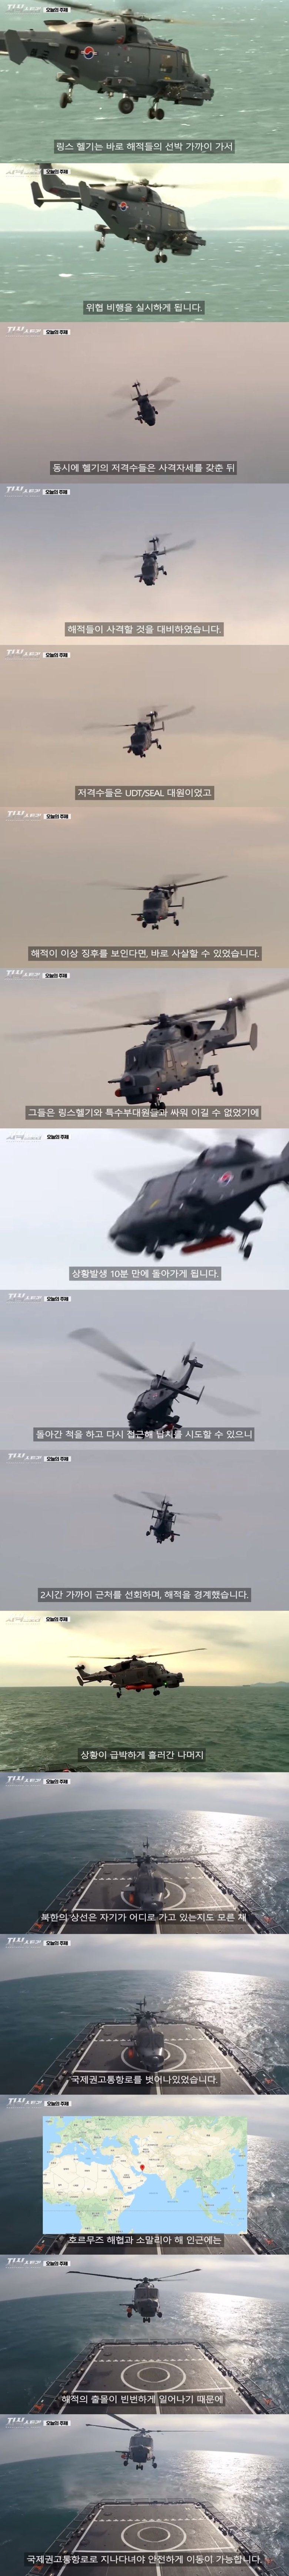 대한민국 청해부대가 북한상선을 구조했을때 교신내용.jpg